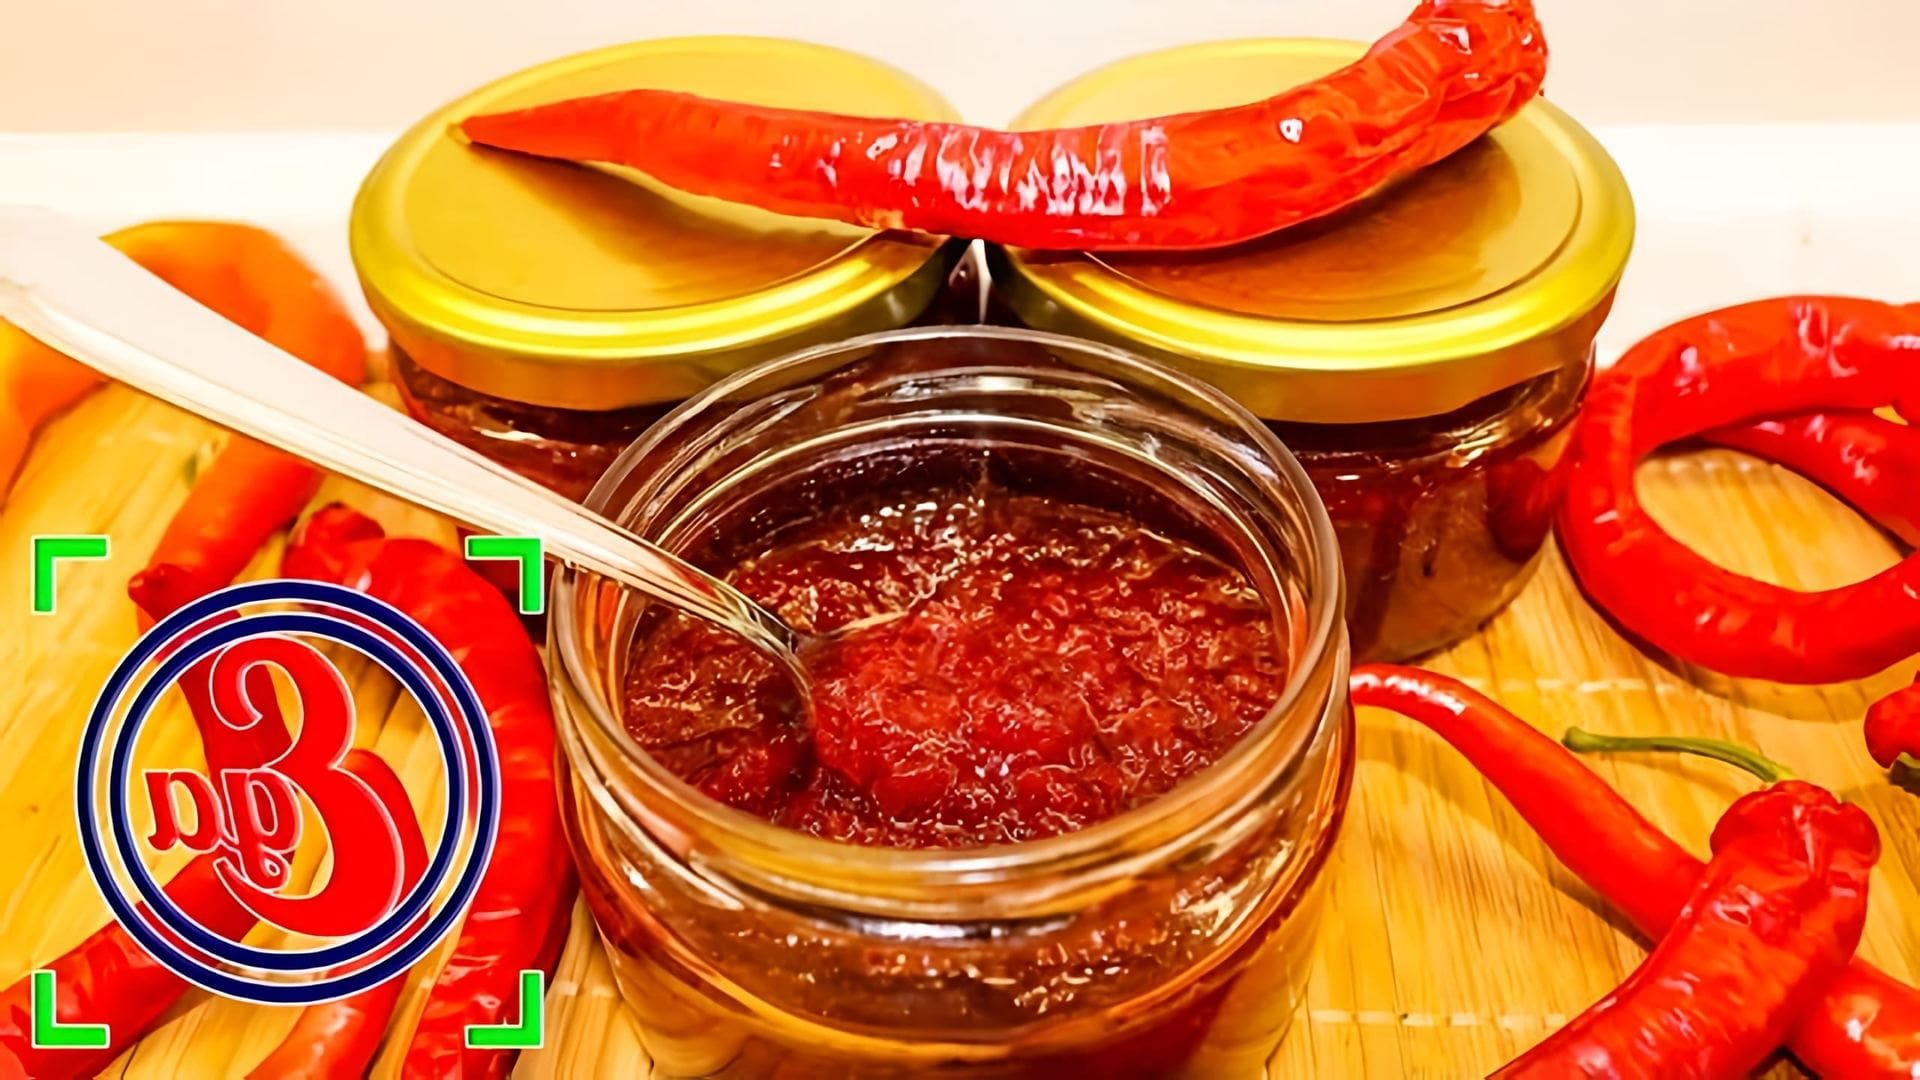 В этом видео демонстрируется процесс приготовления джема из острого перца чили на зиму